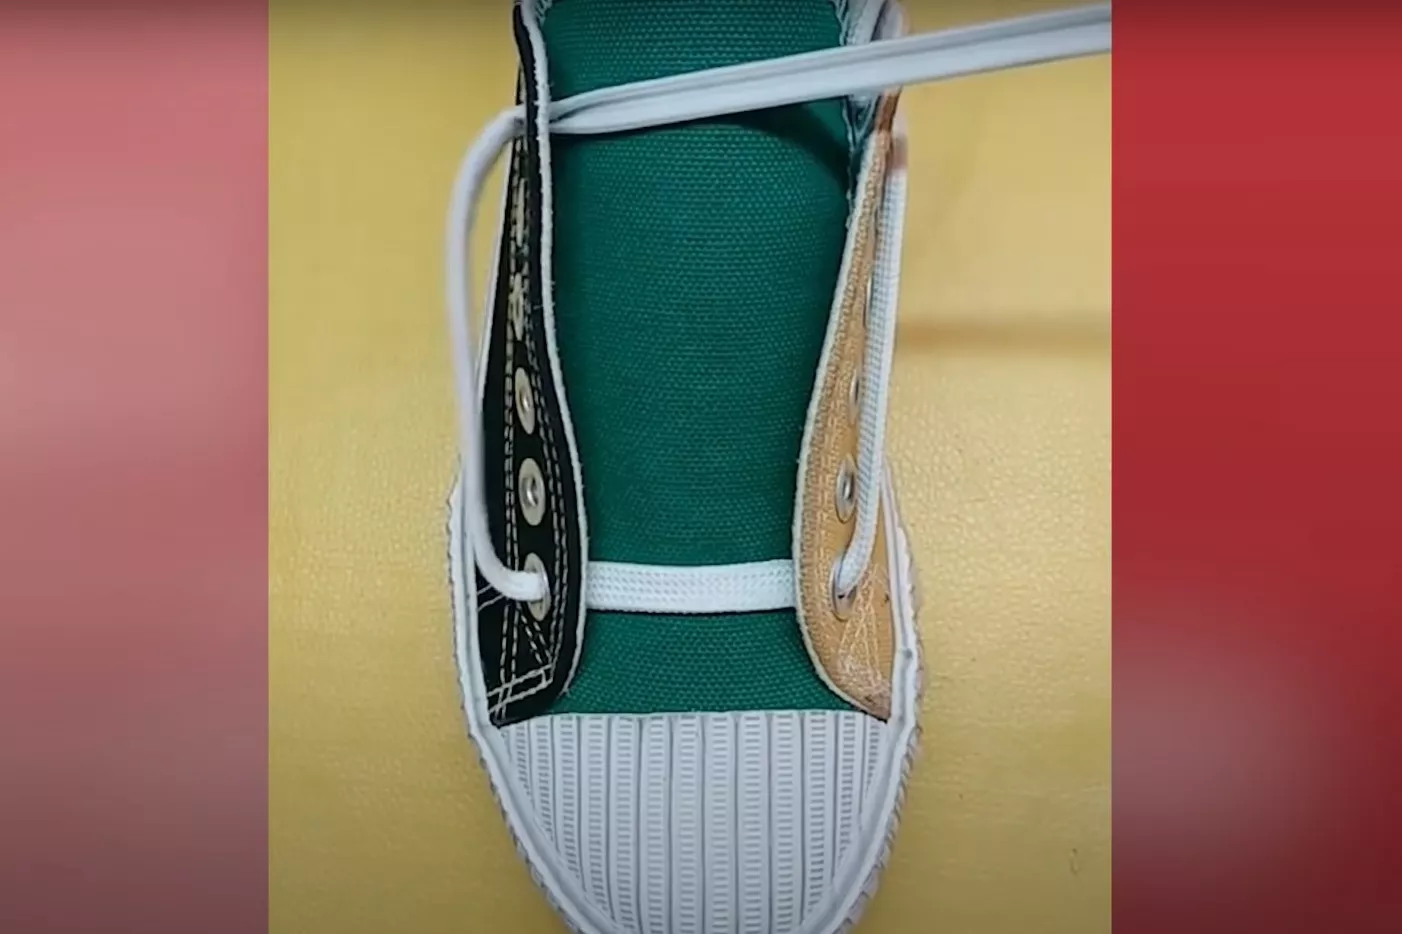 Как завязать шнурки. Фото: скриншот из YouTube/Crafts DIY